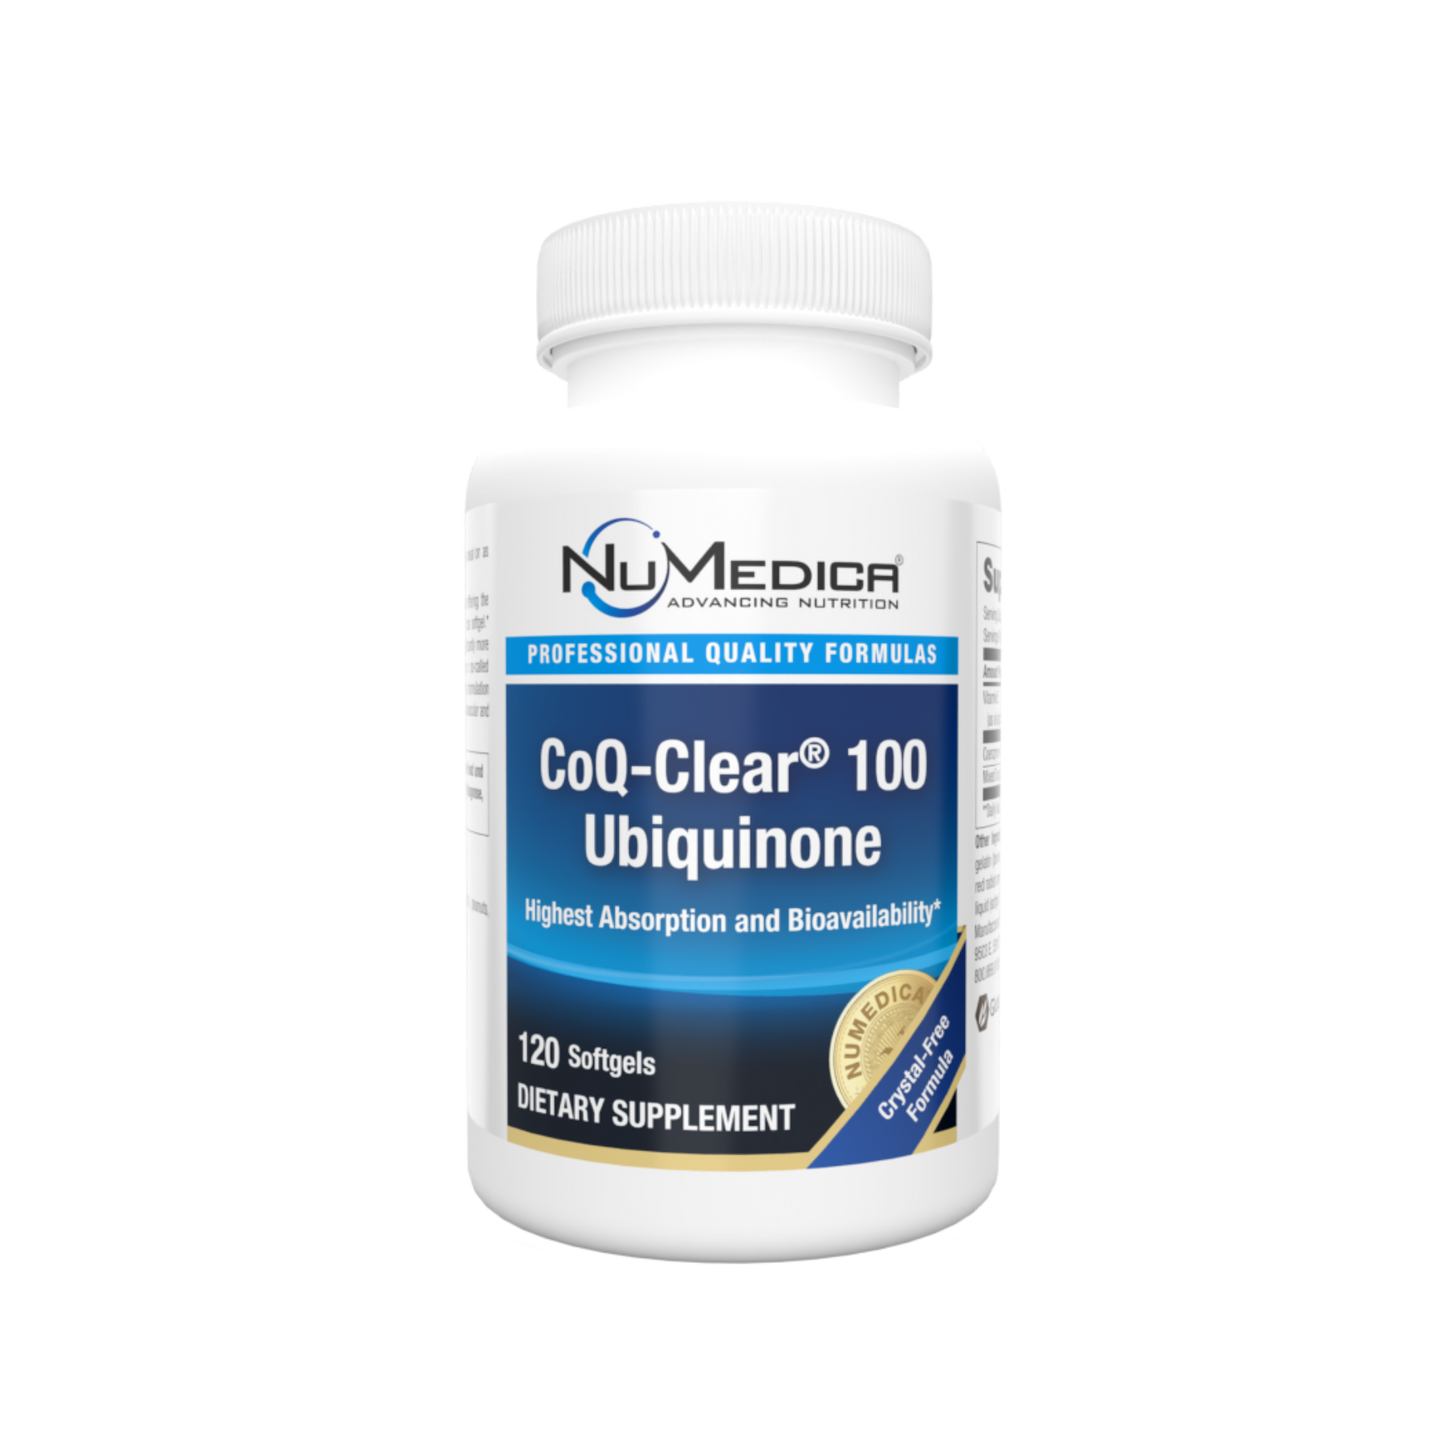 NuMedica CoQ-Clear 100 Ubiquinone Softgels